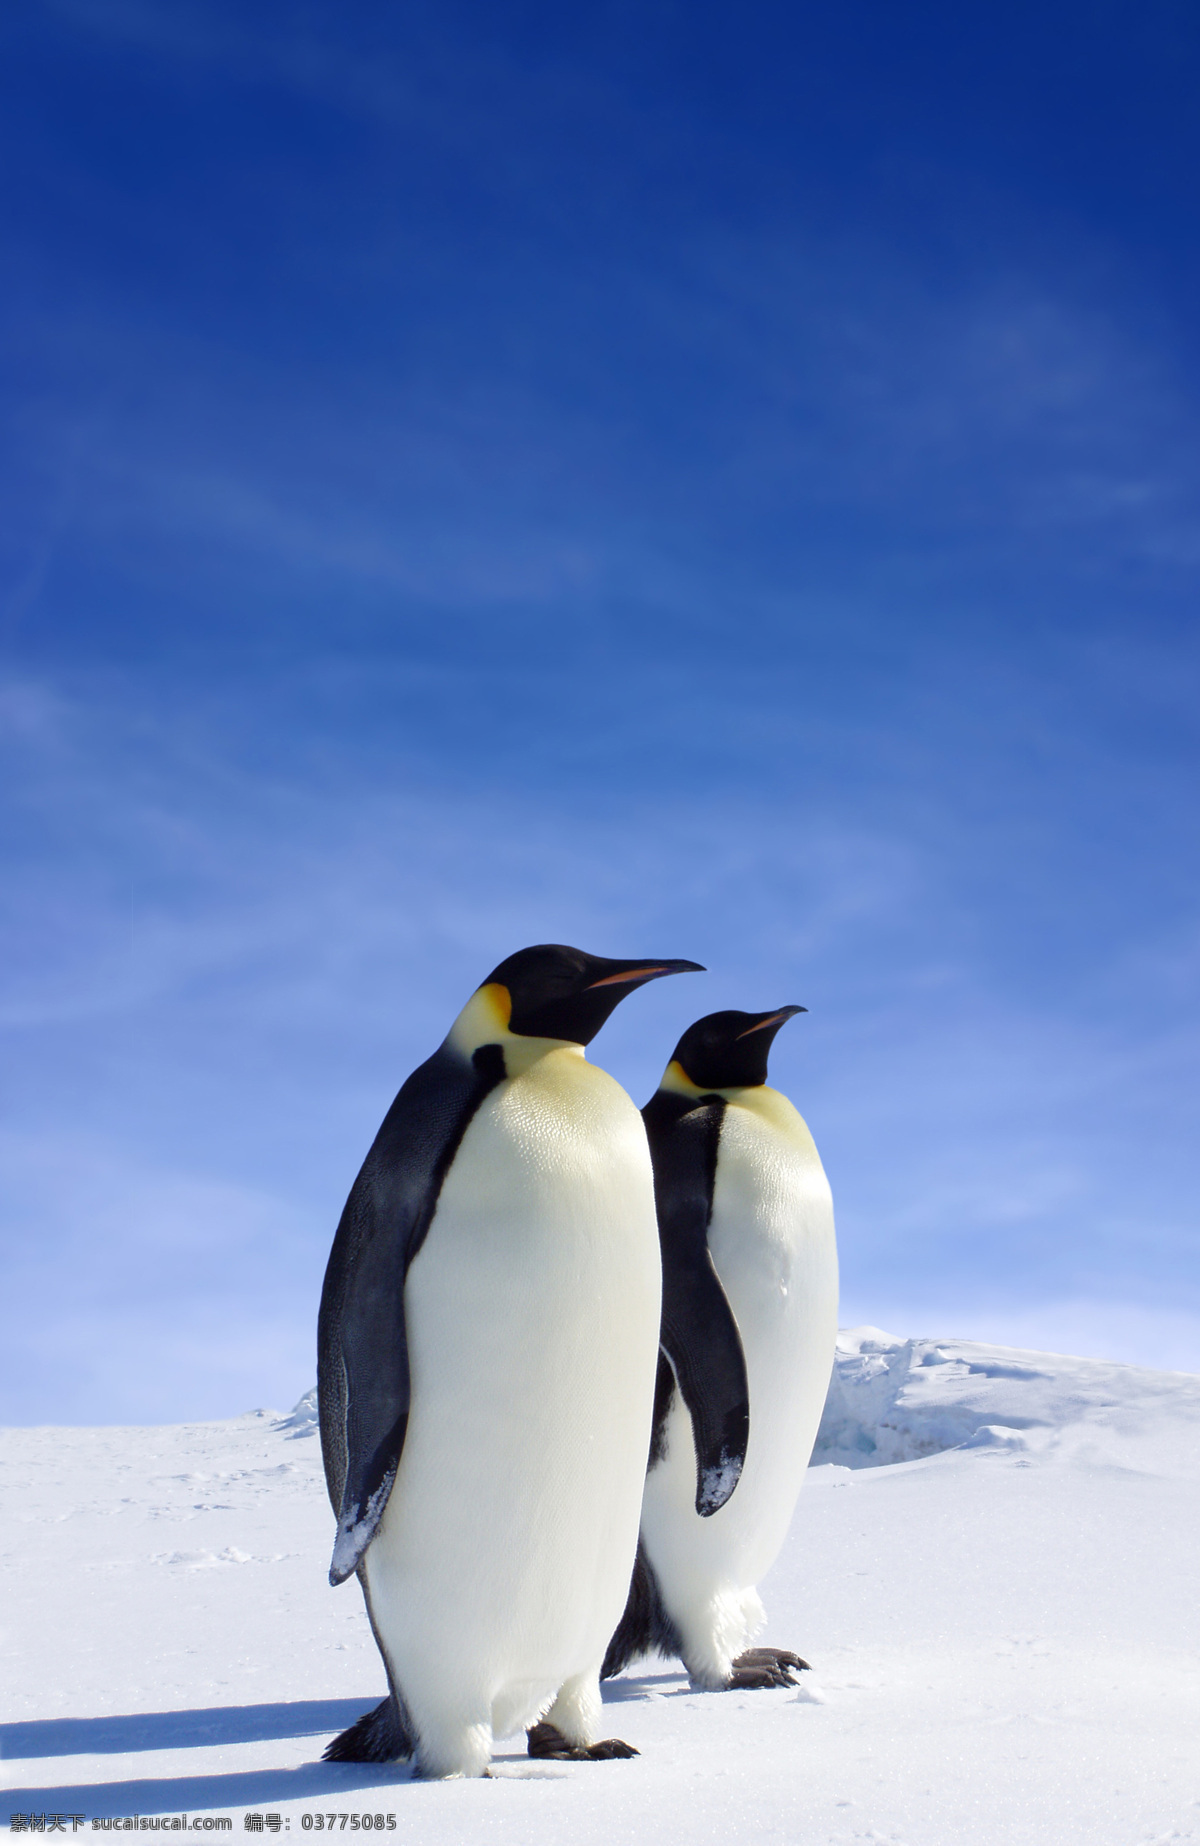 南极 帝 企鹅 鹅 动物 帝企鹅 南极动物 鸟 一群企鹅 冰山 冰天雪地 动物摄影 南极企鹅 企鹅群 企鹅素材 生物世界 海洋生物